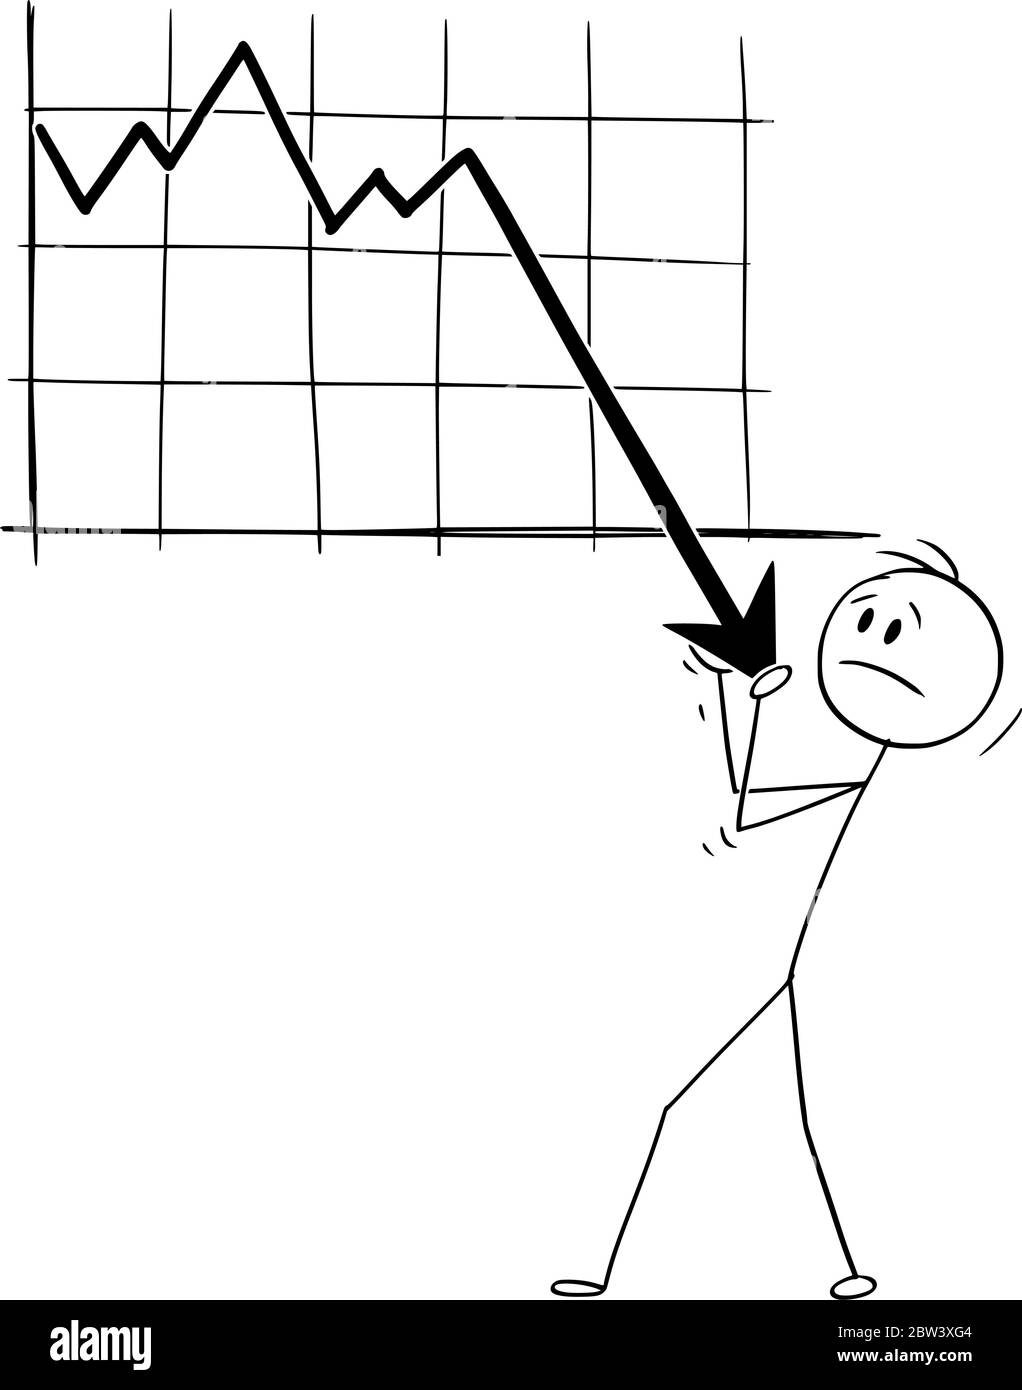 Grafico vettoriale del cartoon disegno di illustrazione concettuale di uomo o uomo d'affari che cerca di tenere un grafico economico o finanziario in declino. Concetto di recessione o crisi. Illustrazione Vettoriale